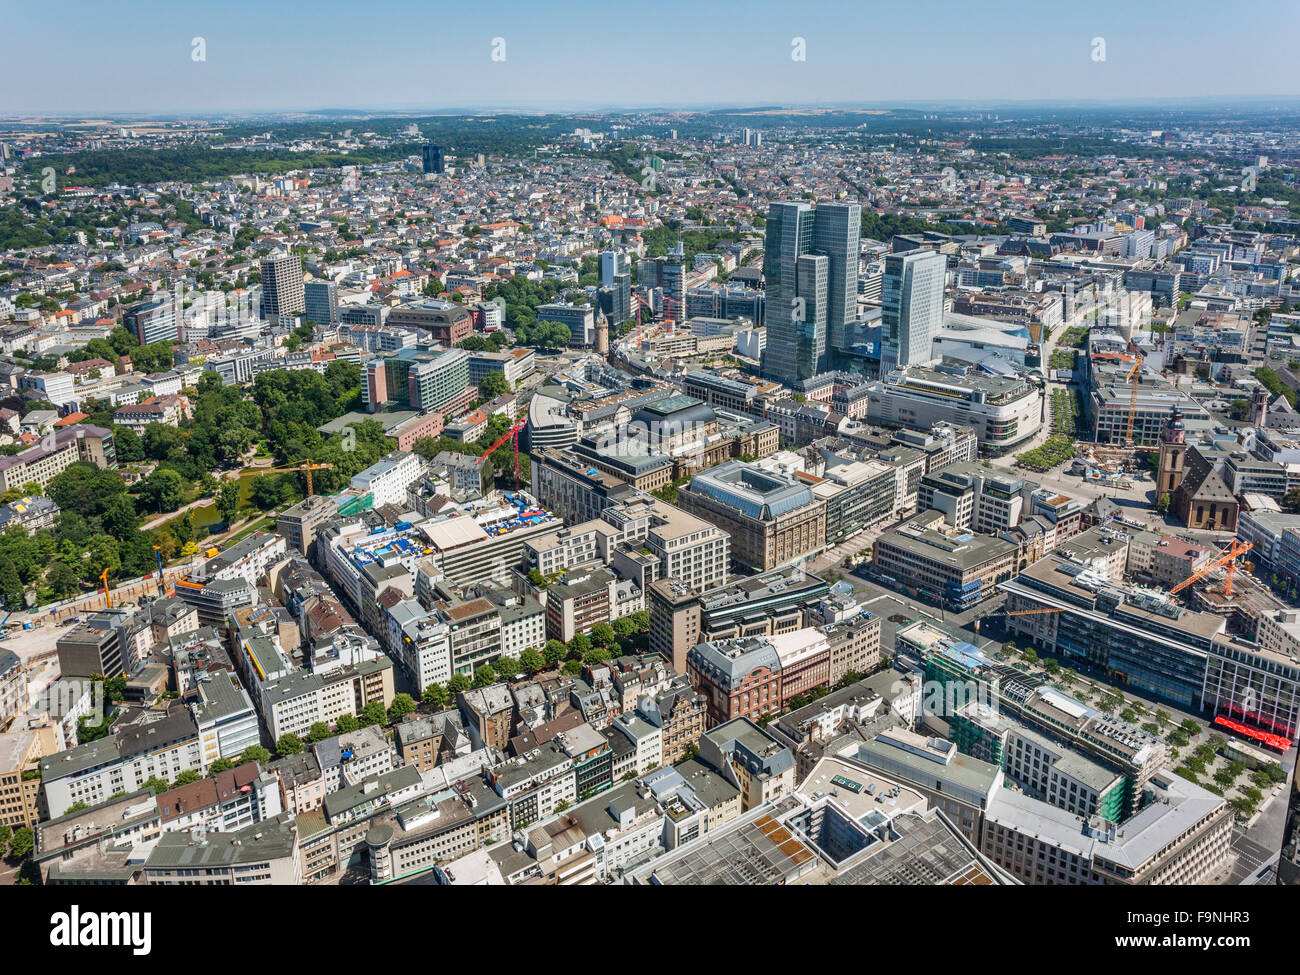 Germania, Hesse, Frankfurt am Main, vista aerea del centro della città di Francoforte sul Meno con Goethestrasse Zeil Galerie e Borsa Foto Stock